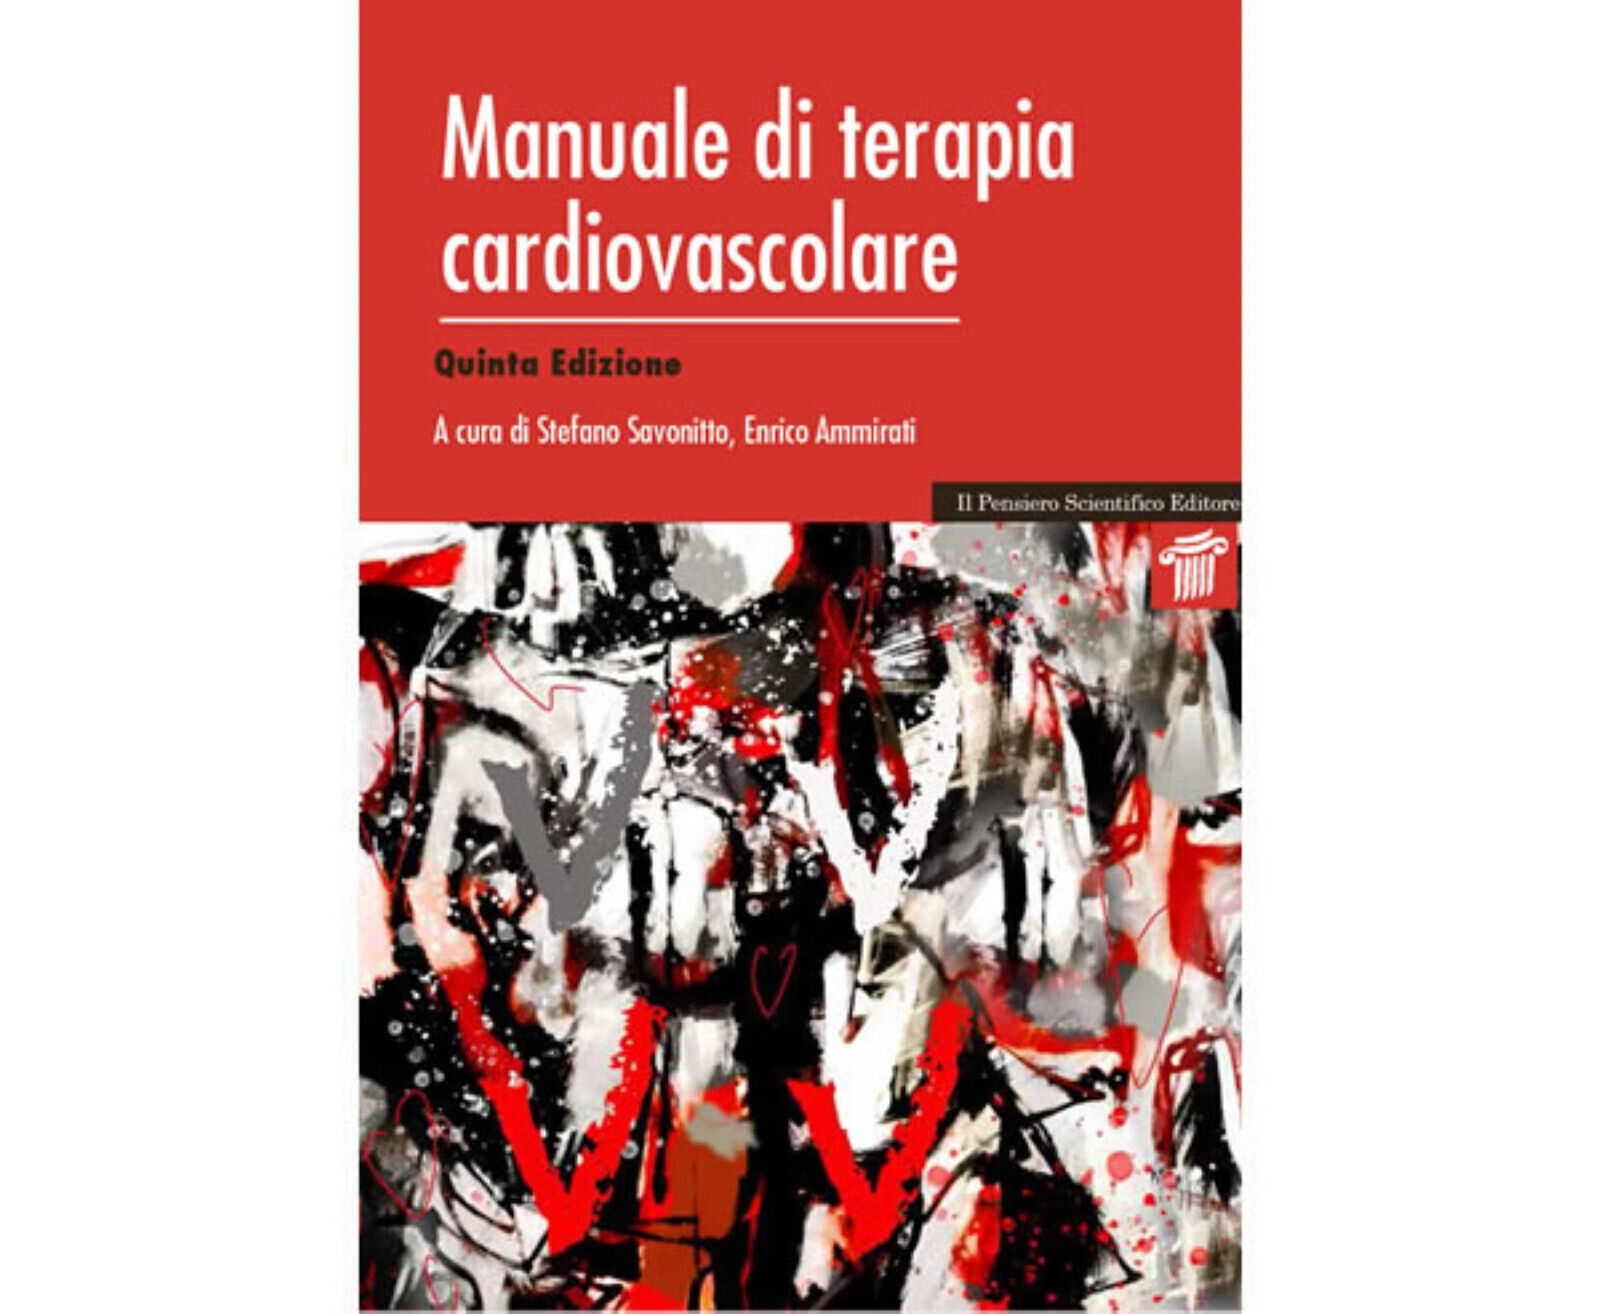 Manuale di terapia cardiovascolare - S. Savonitto, E. Ammirati - 2021